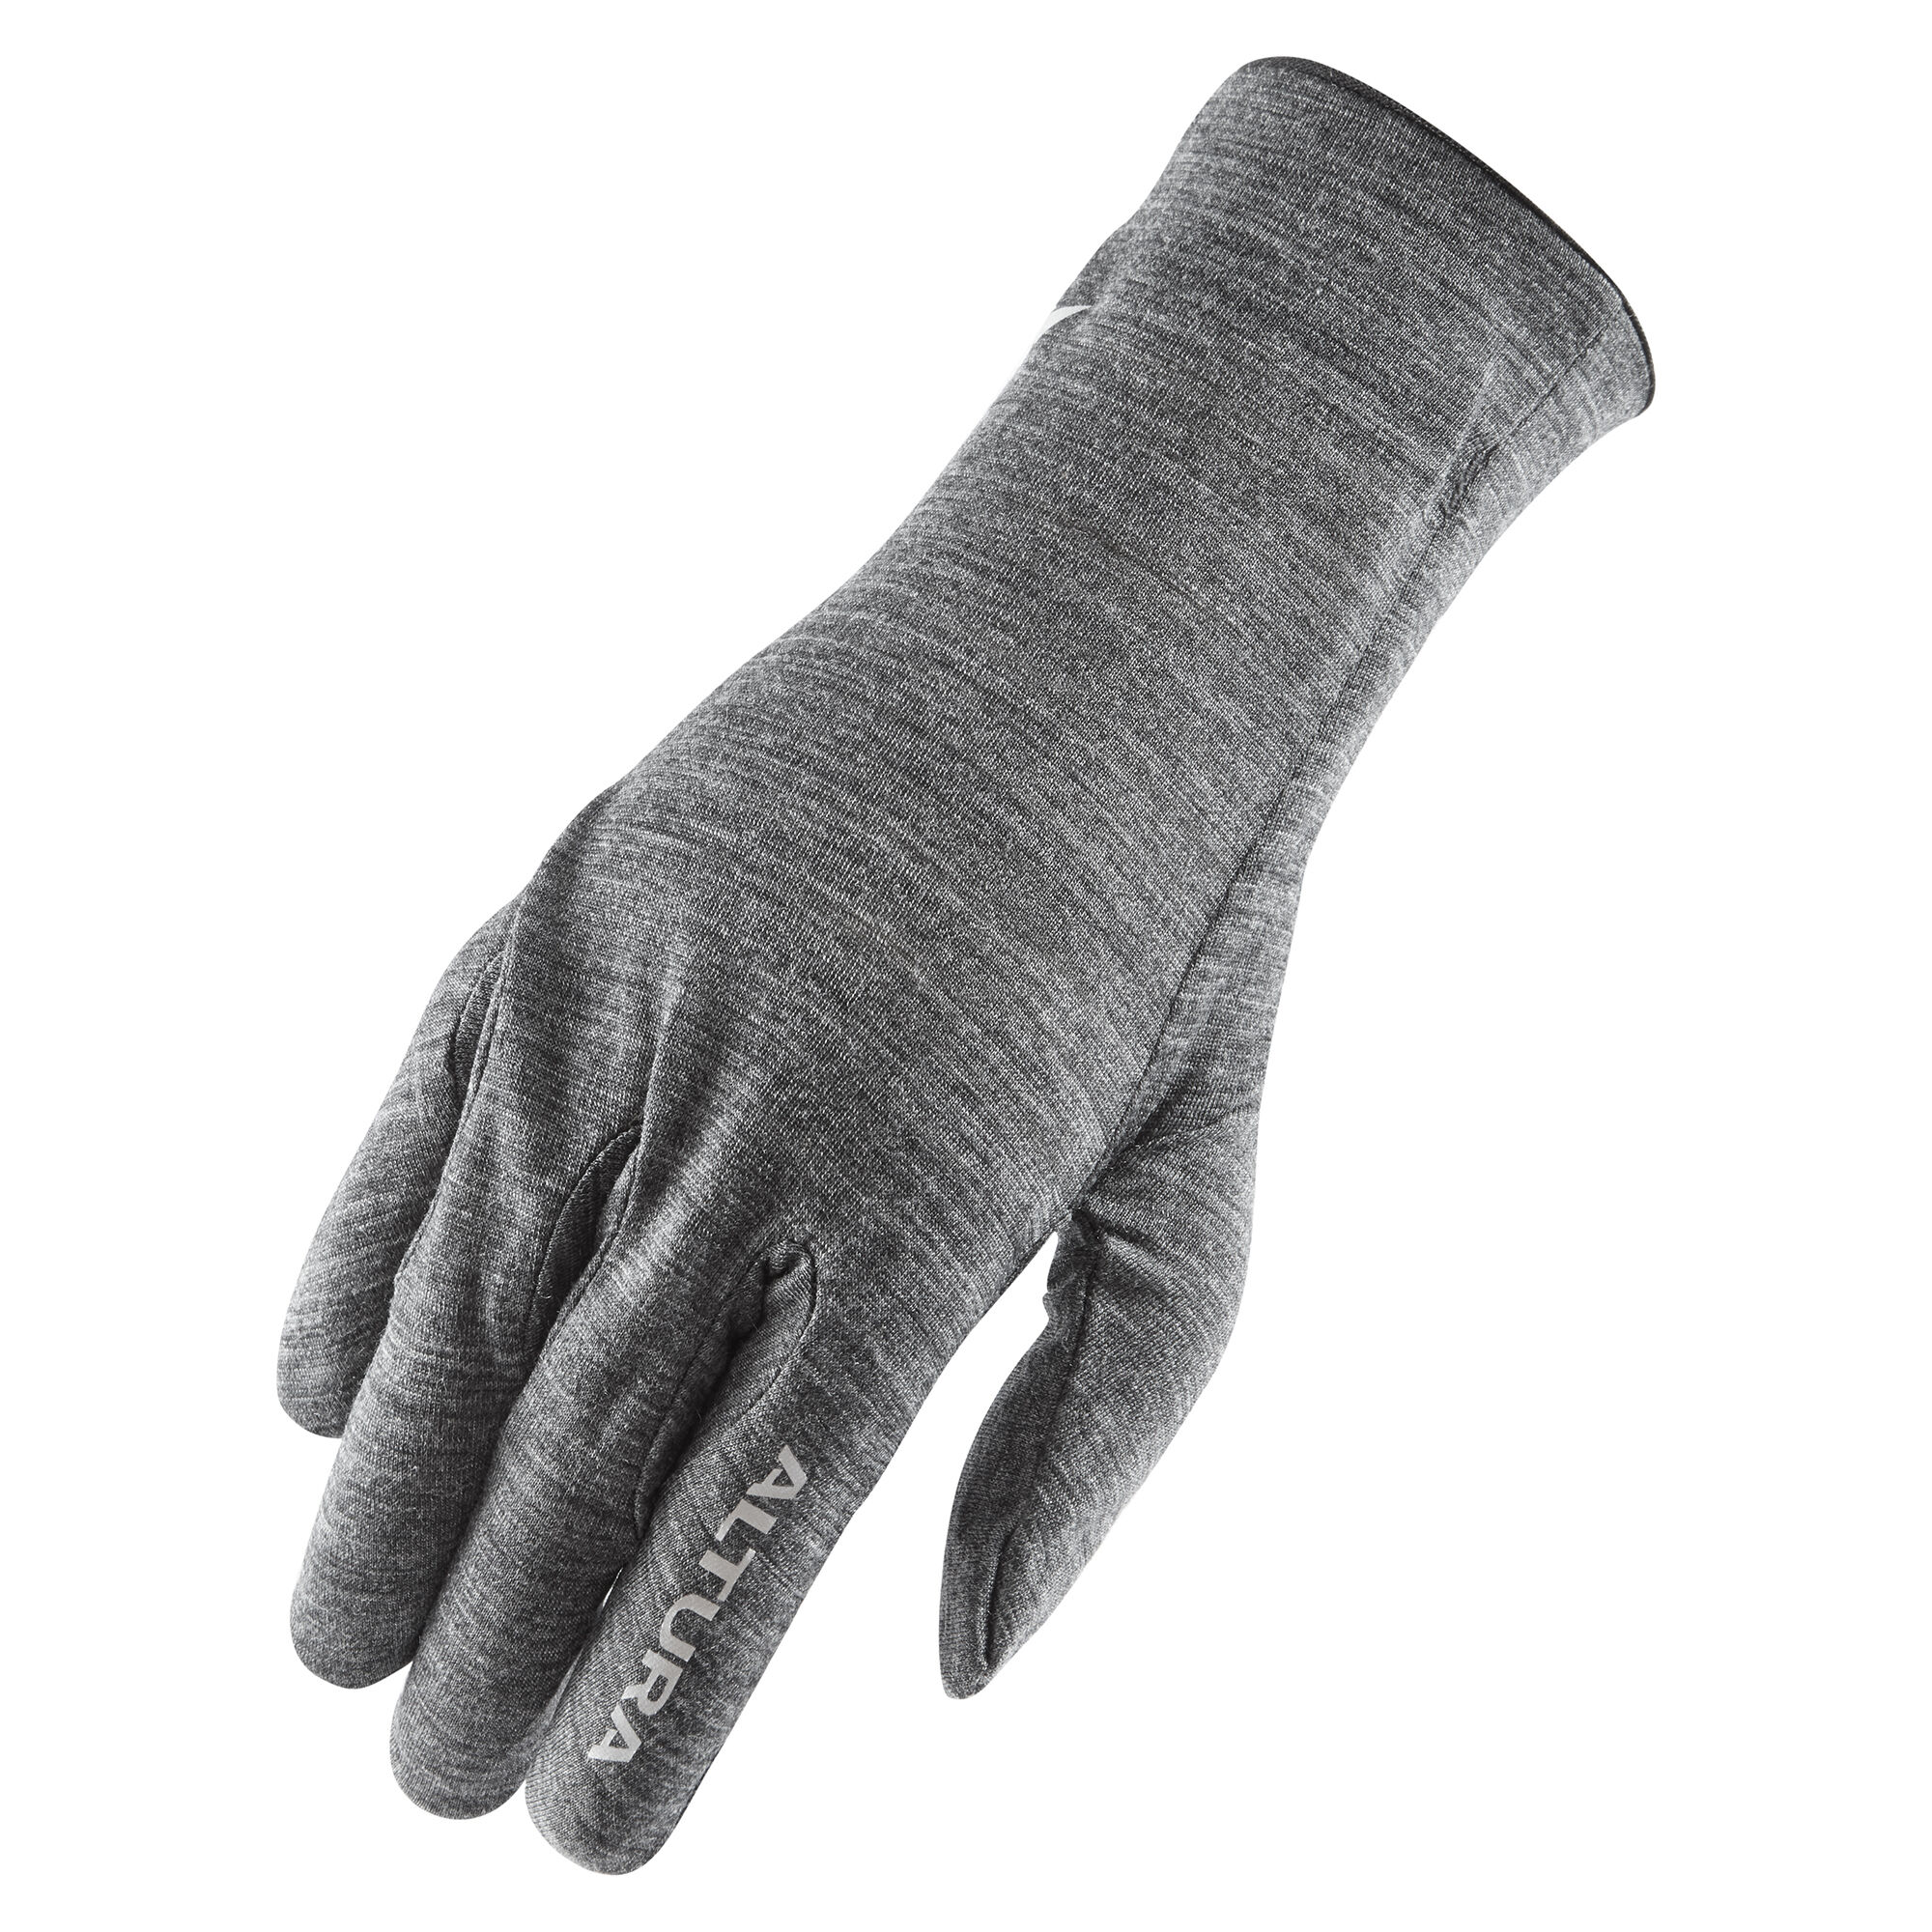 Altura Sous Gant Merino Liner - Inner gloves